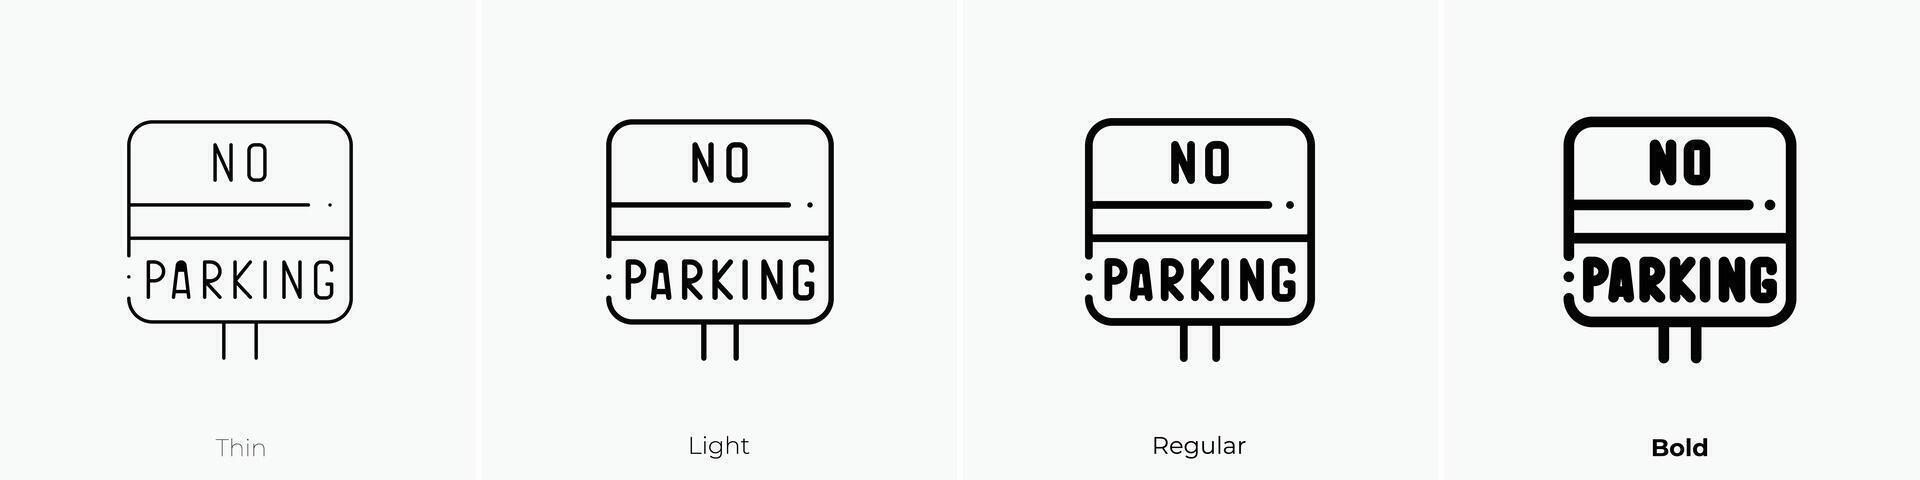 Nej parkering ikon. tunn, ljus, regelbunden och djärv stil design isolerat på vit bakgrund vektor